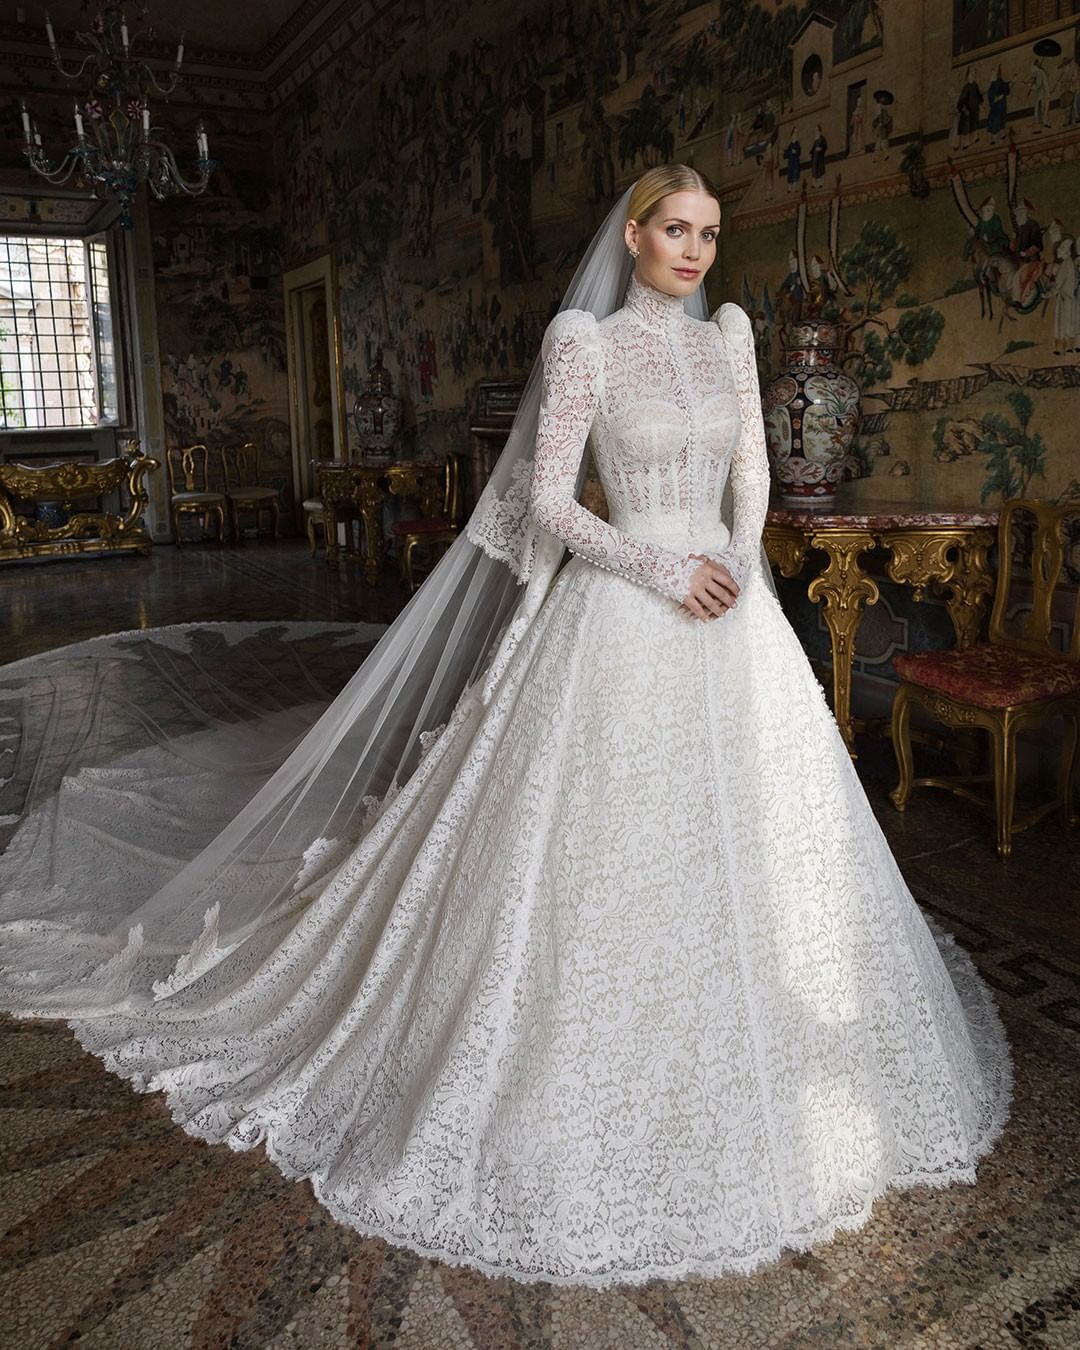 Chiếc váy cưới trắng xa hoa được thiết kế bởi nhà mốt Dolce & Gabbana dựa trên thiết kế váy cưới của mẹ cô. Được biết, chiếc váy này được may thủ công và mất khoảng 6 tháng để hoàn thành